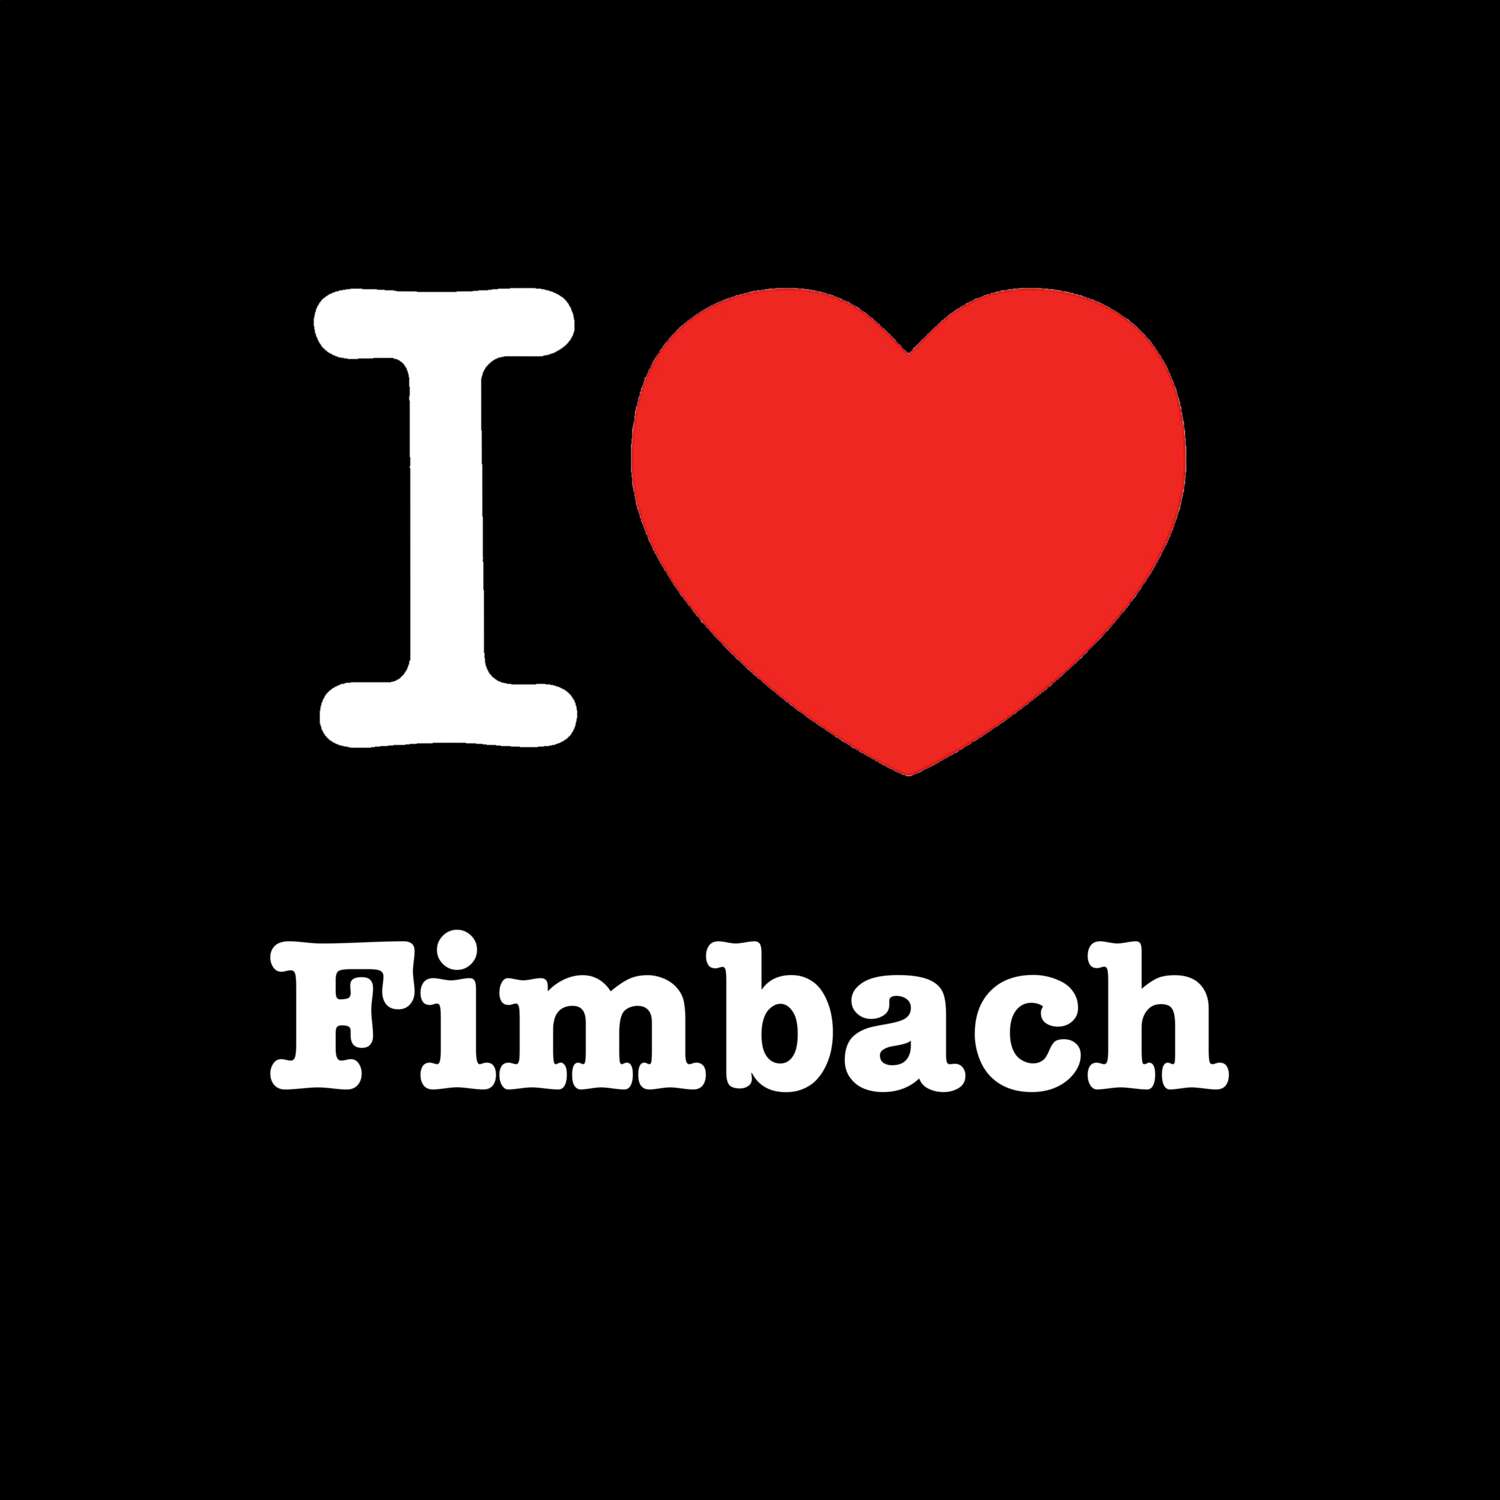 Fimbach T-Shirt »I love«